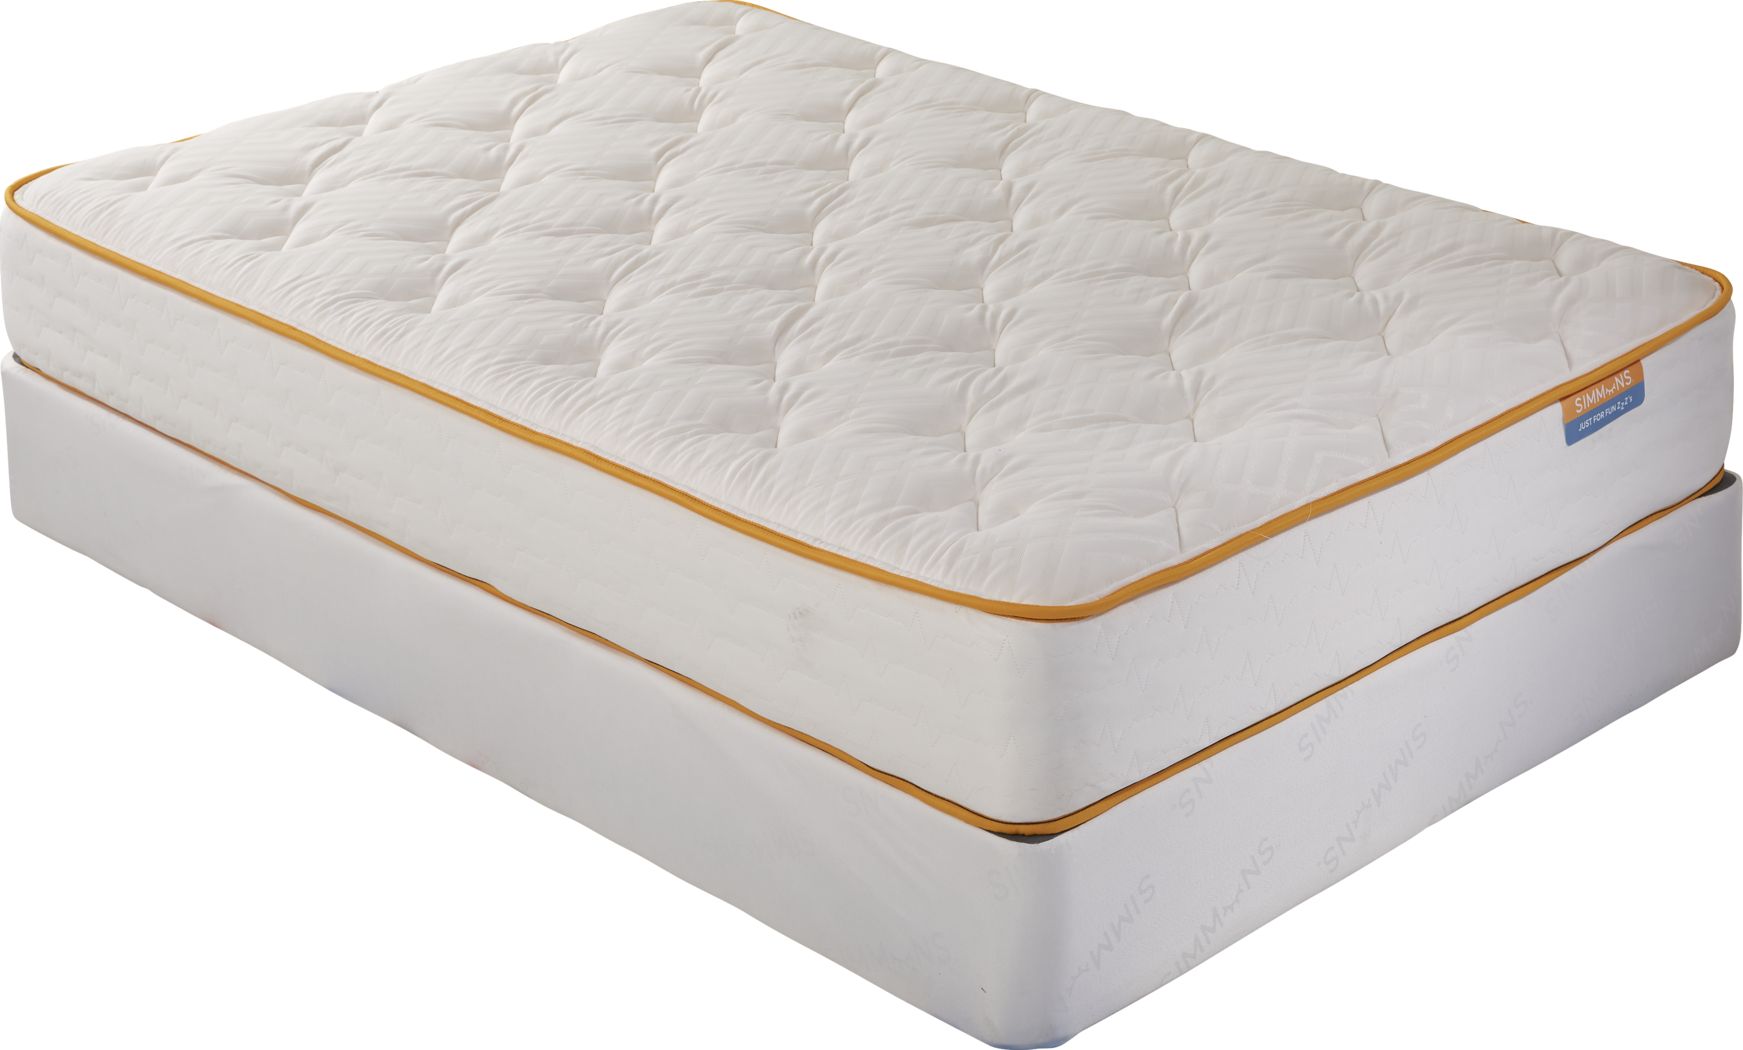 king simmons beautyresthaleigh mattress